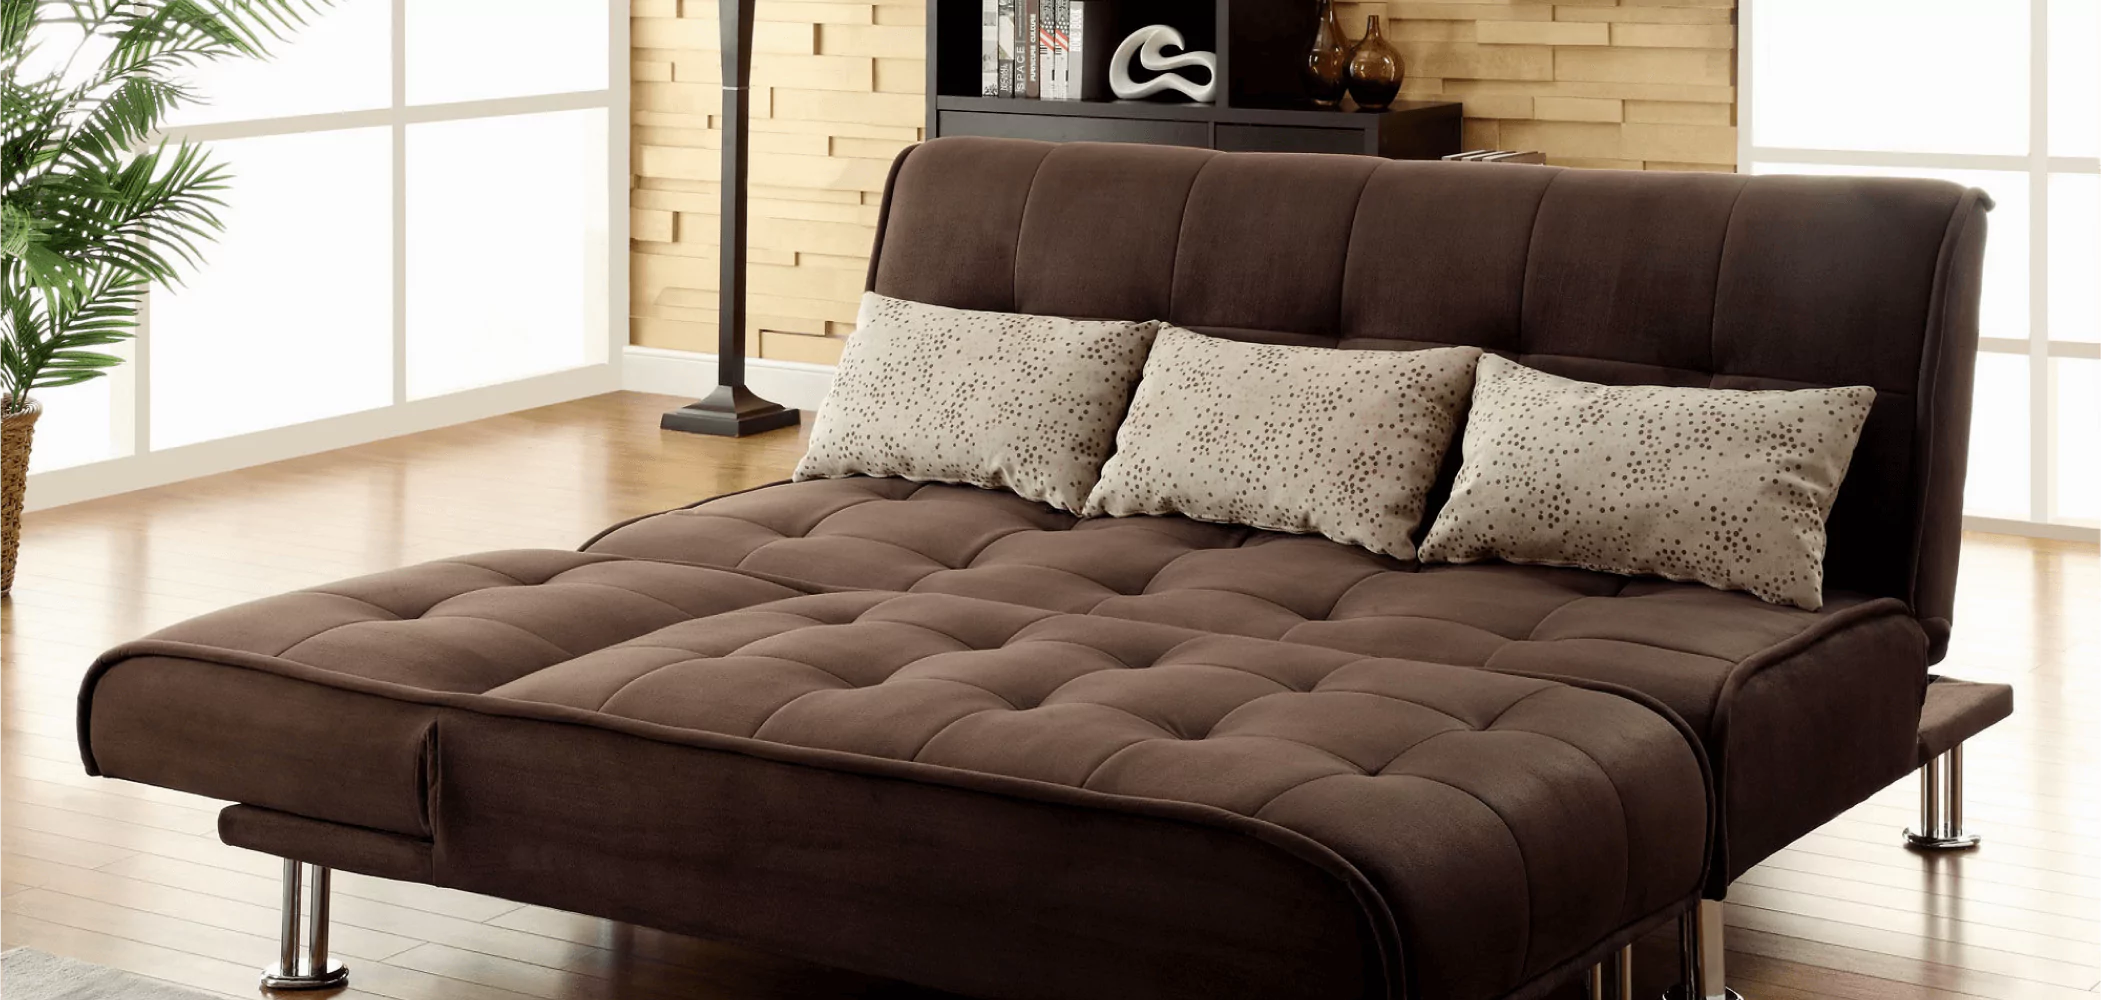 Купить диван. Диван Квин сайз. Раскладной диван Sofa Bed. Диван Sectional Sleeper для сна. Раскладной диван Sofa Bed серого цвета IMR-613087.